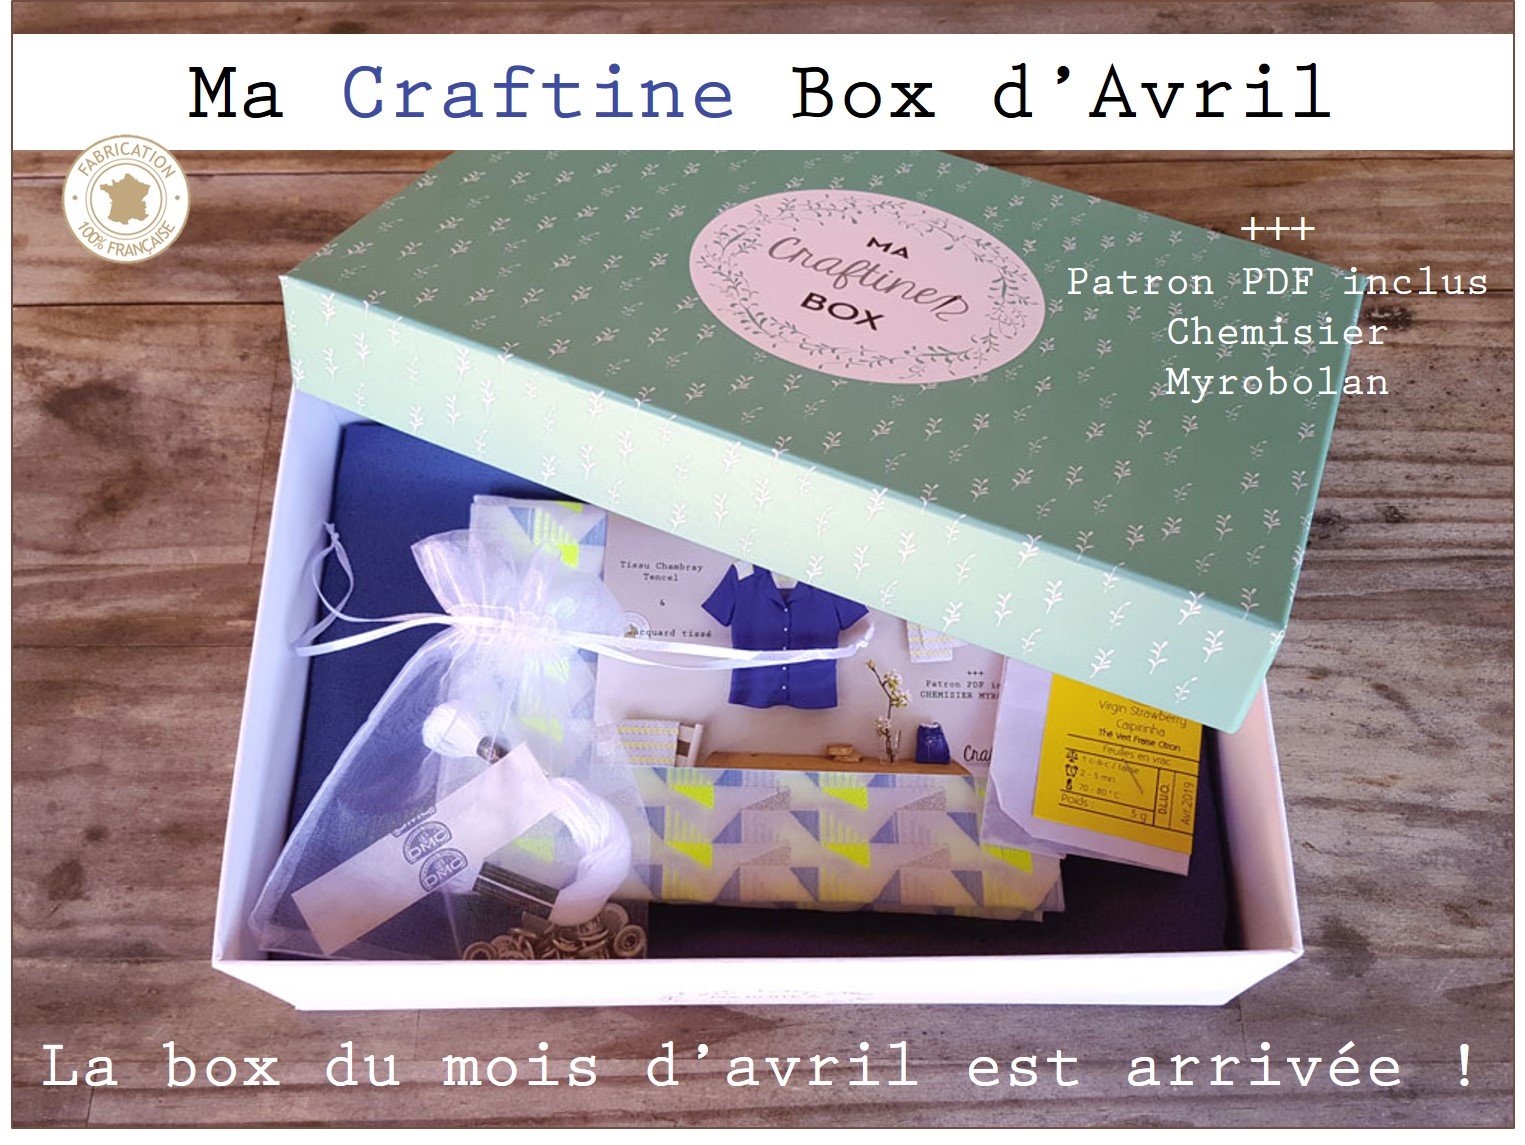 Craftine Box : La box du mois d'avril est arrivée ! - Le blog de Craftine